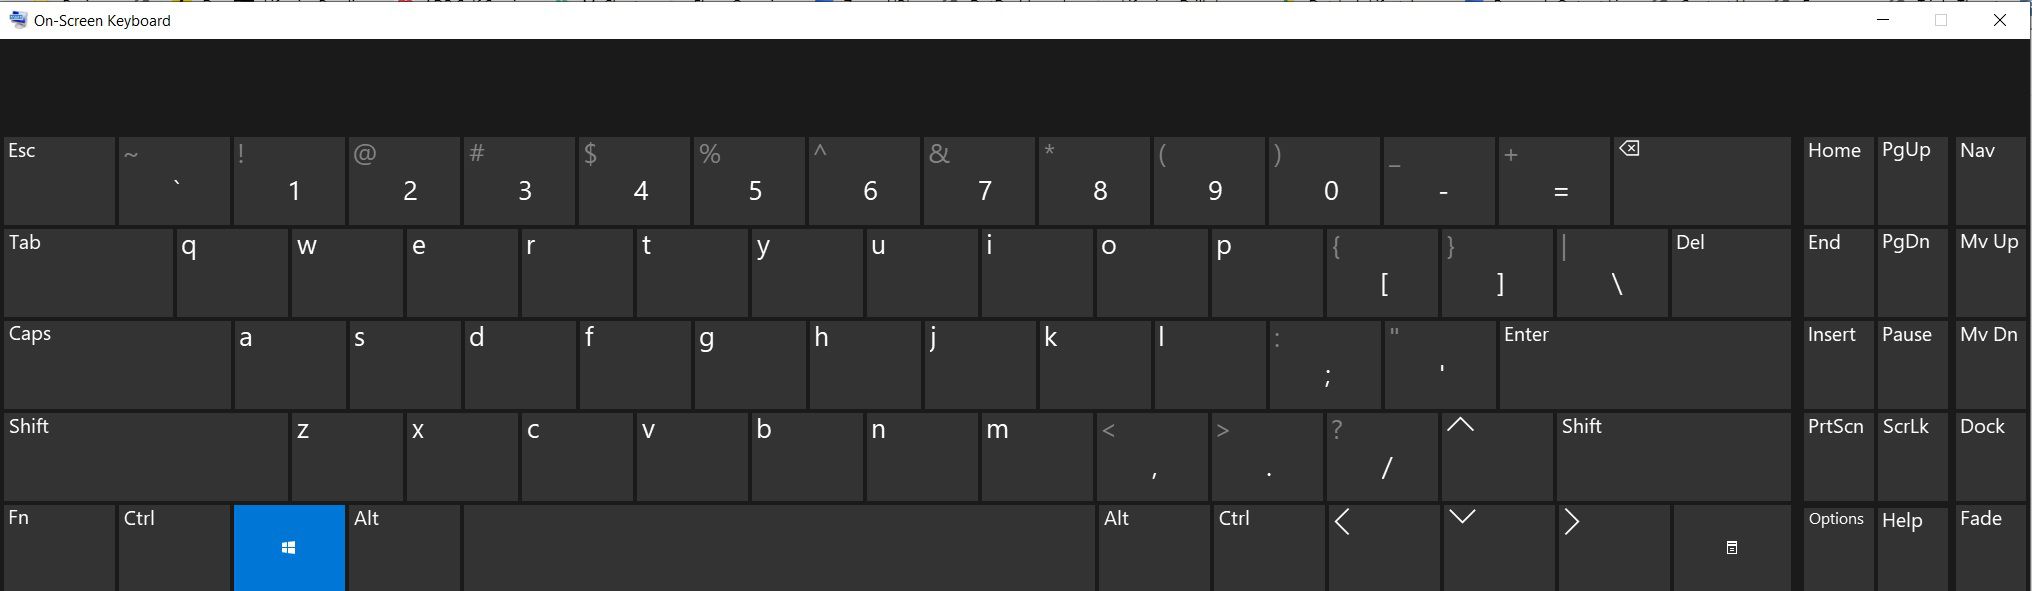 Виндовс 11 раскладка клавиатуры. Клавиатура виндовс 10. Экранная клавиатура виндовс 10. Раскладка клавиатуры виндовс 10. Стандартная раскладка клавиатуры Windows 10.